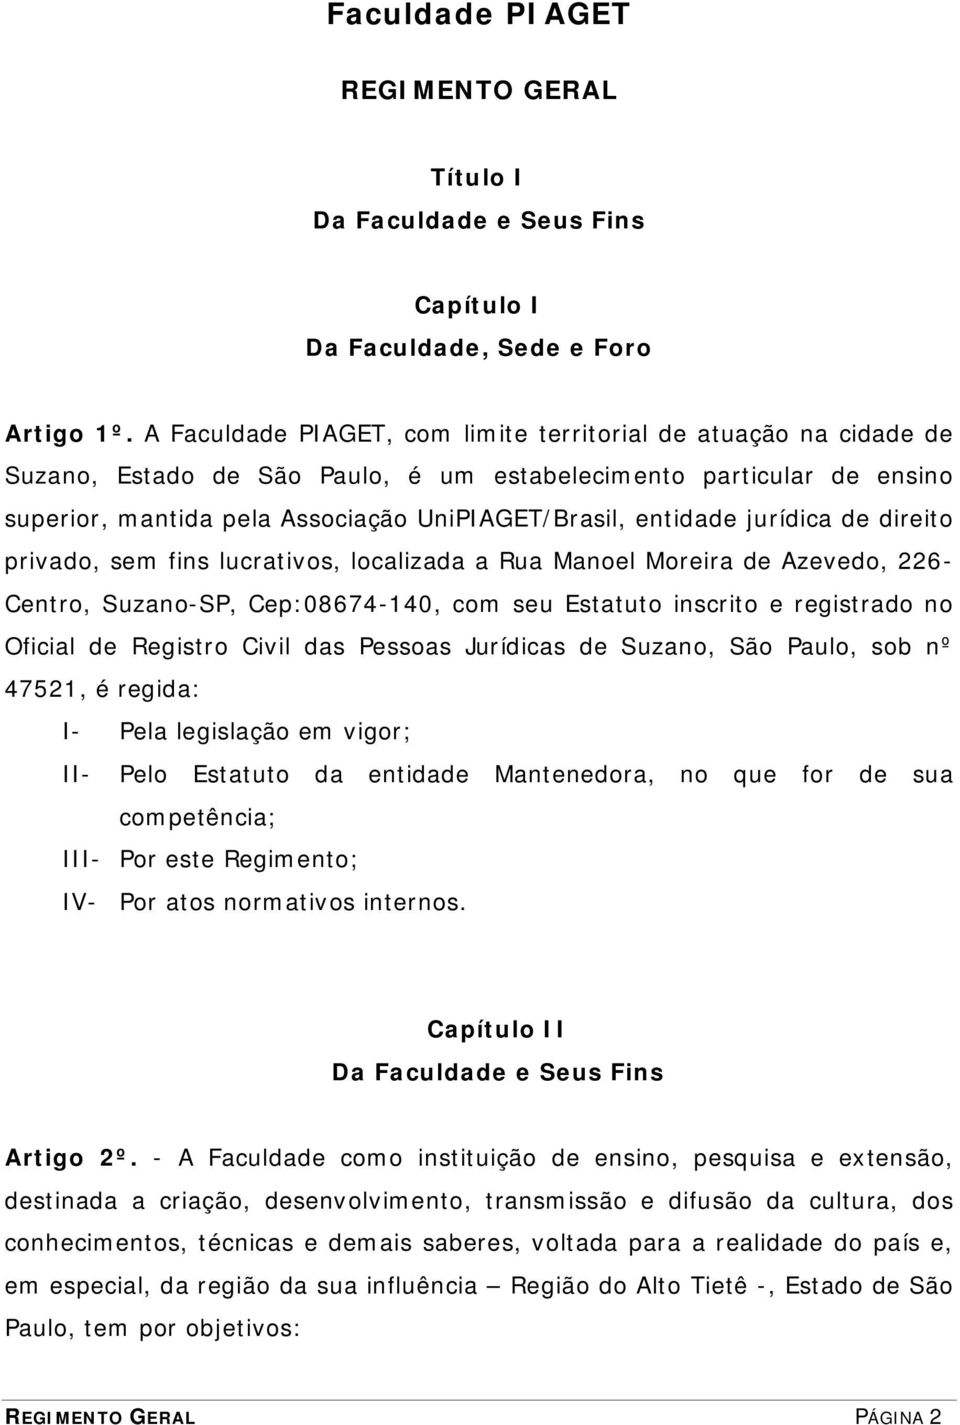 jurídica de direito privado, sem fins lucrativos, localizada a Rua Manoel Moreira de Azevedo, 226- Centro, Suzano-SP, Cep:08674-140, com seu Estatuto inscrito e registrado no Oficial de Registro